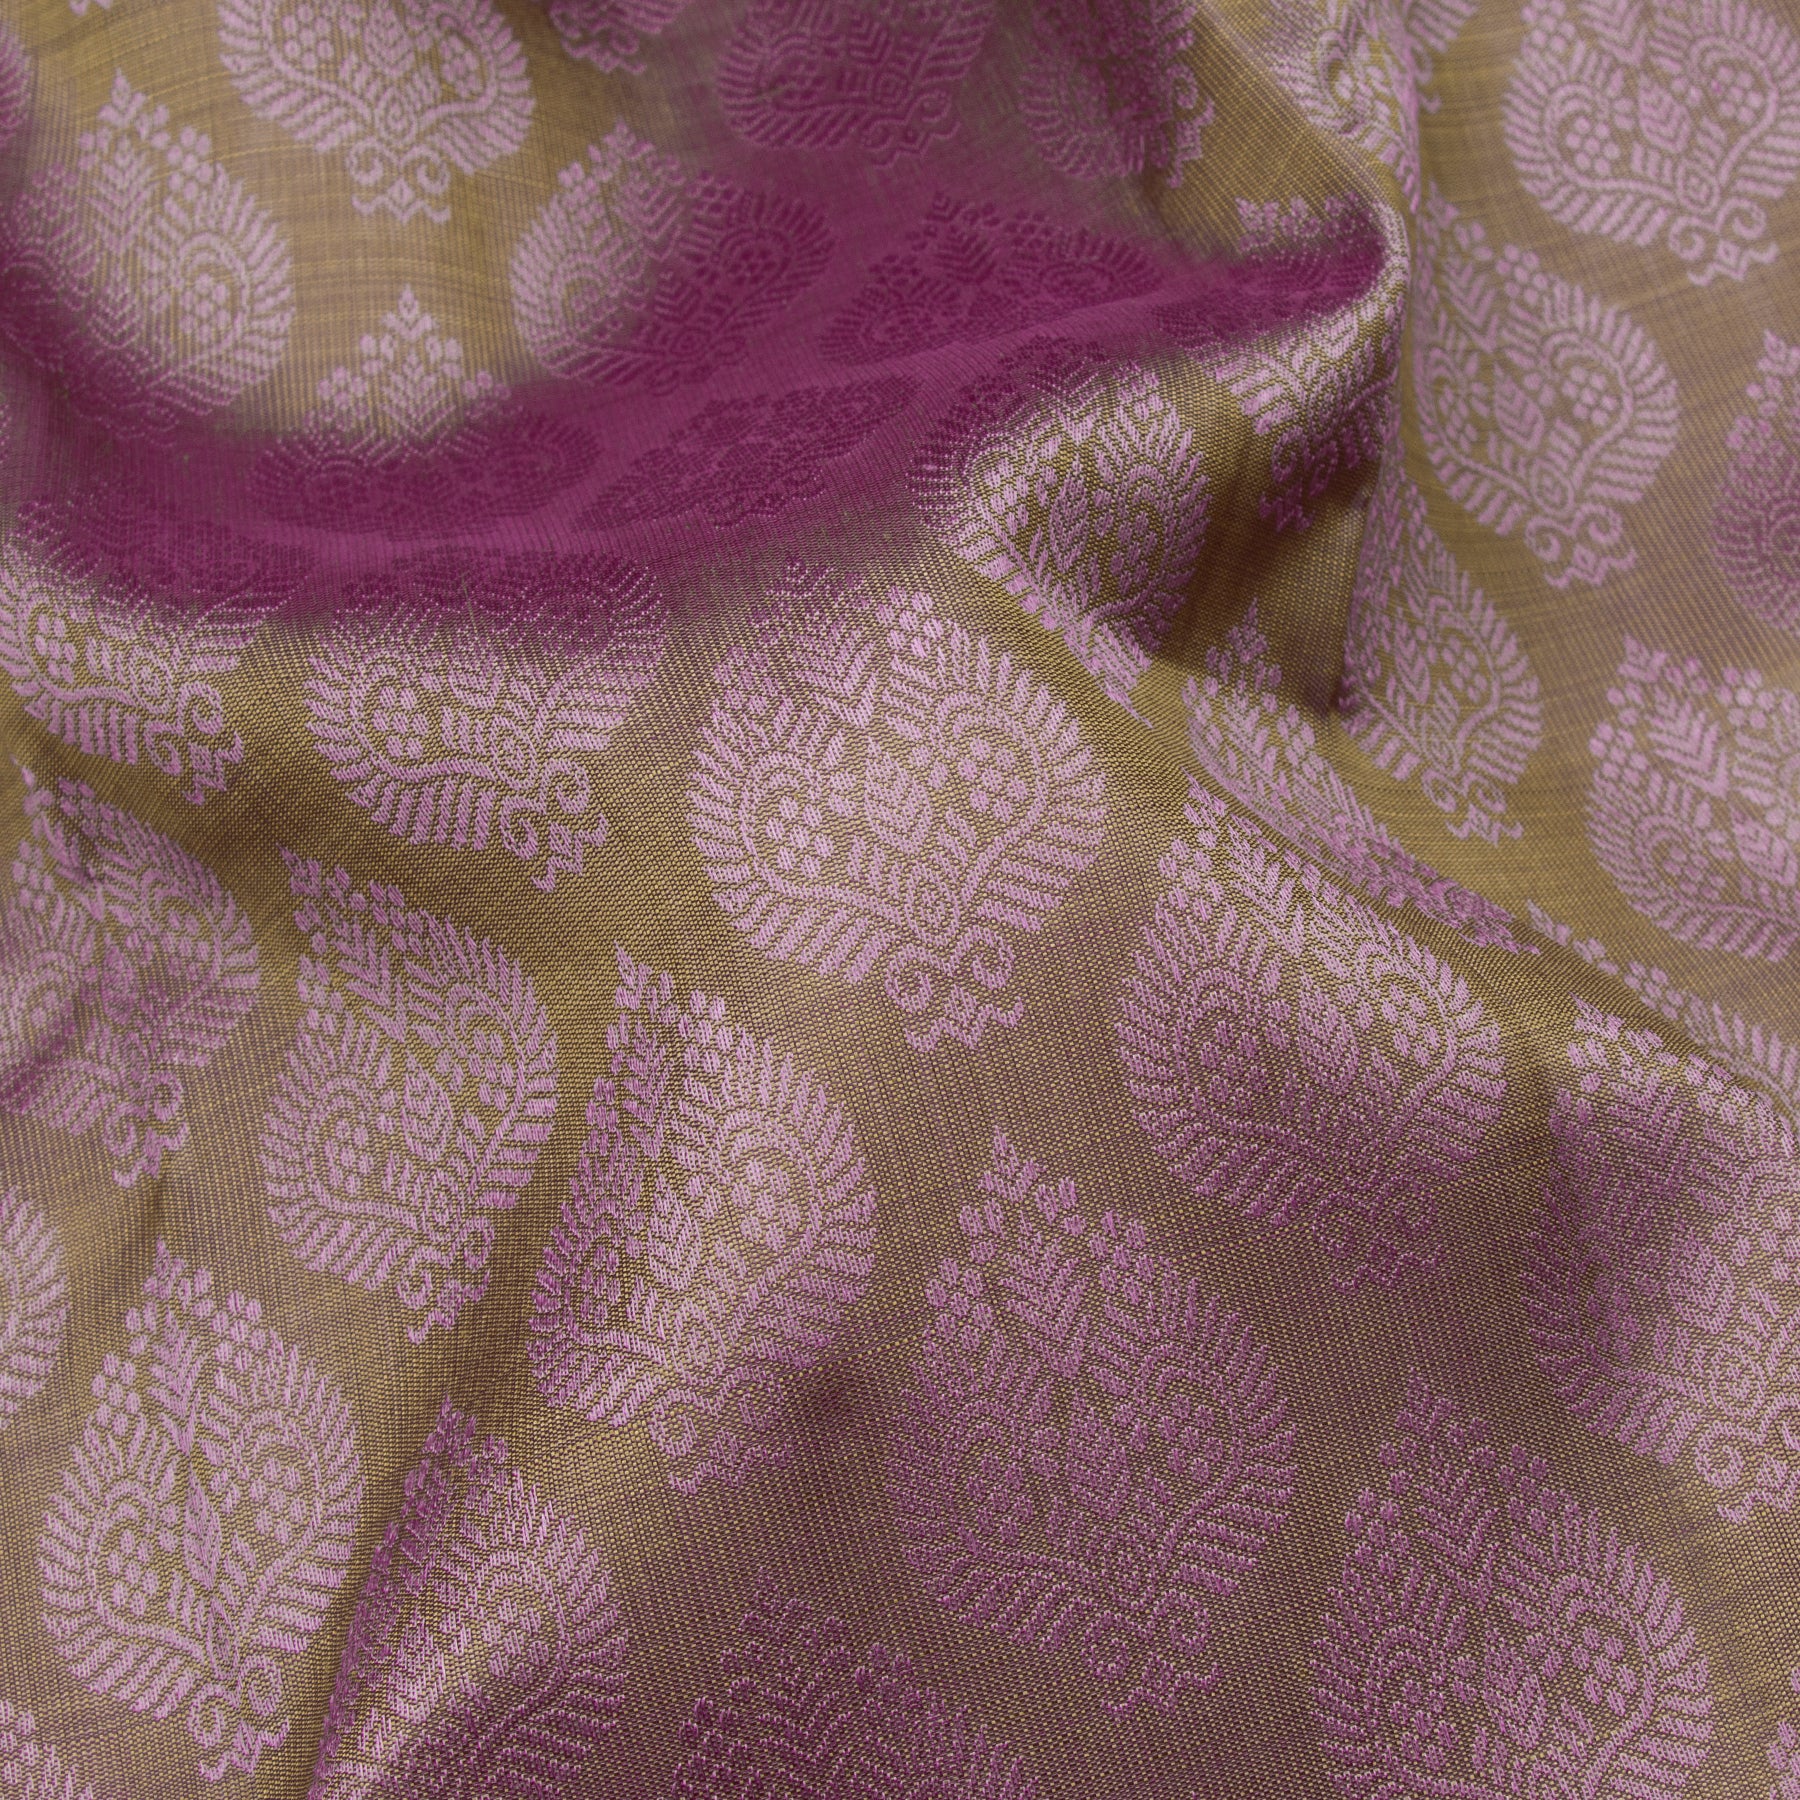 Kanakavalli Kanjivaram Silk Sari 23-599-HS001-13248 - Fabric View